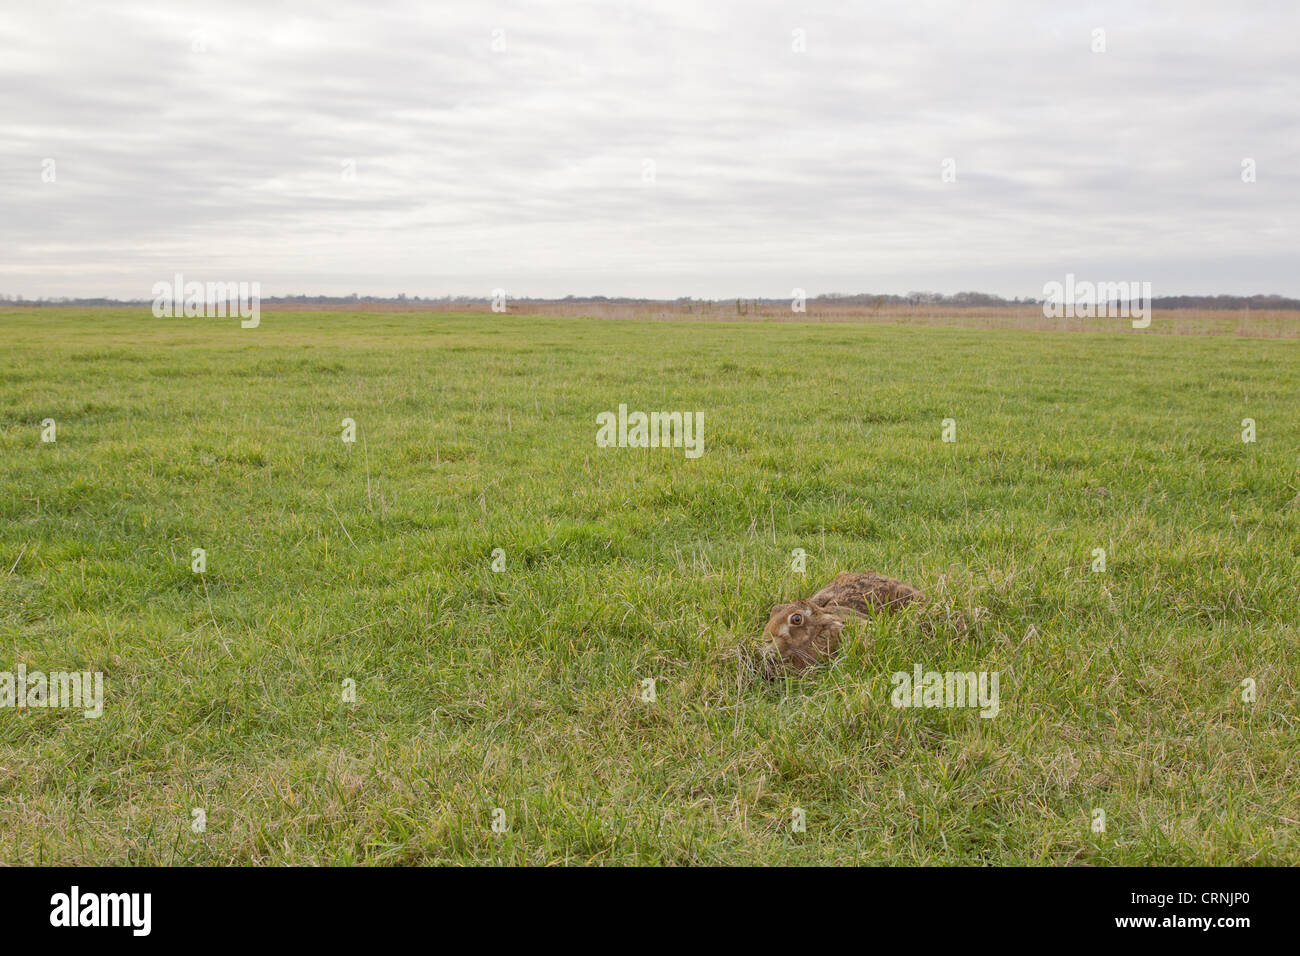 Lièvre d'Europe (Lepus europaeus) adulte, au repos dans l'herbe en forme de l'habitat sur le terrain, Suffolk, Angleterre, janvier Banque D'Images